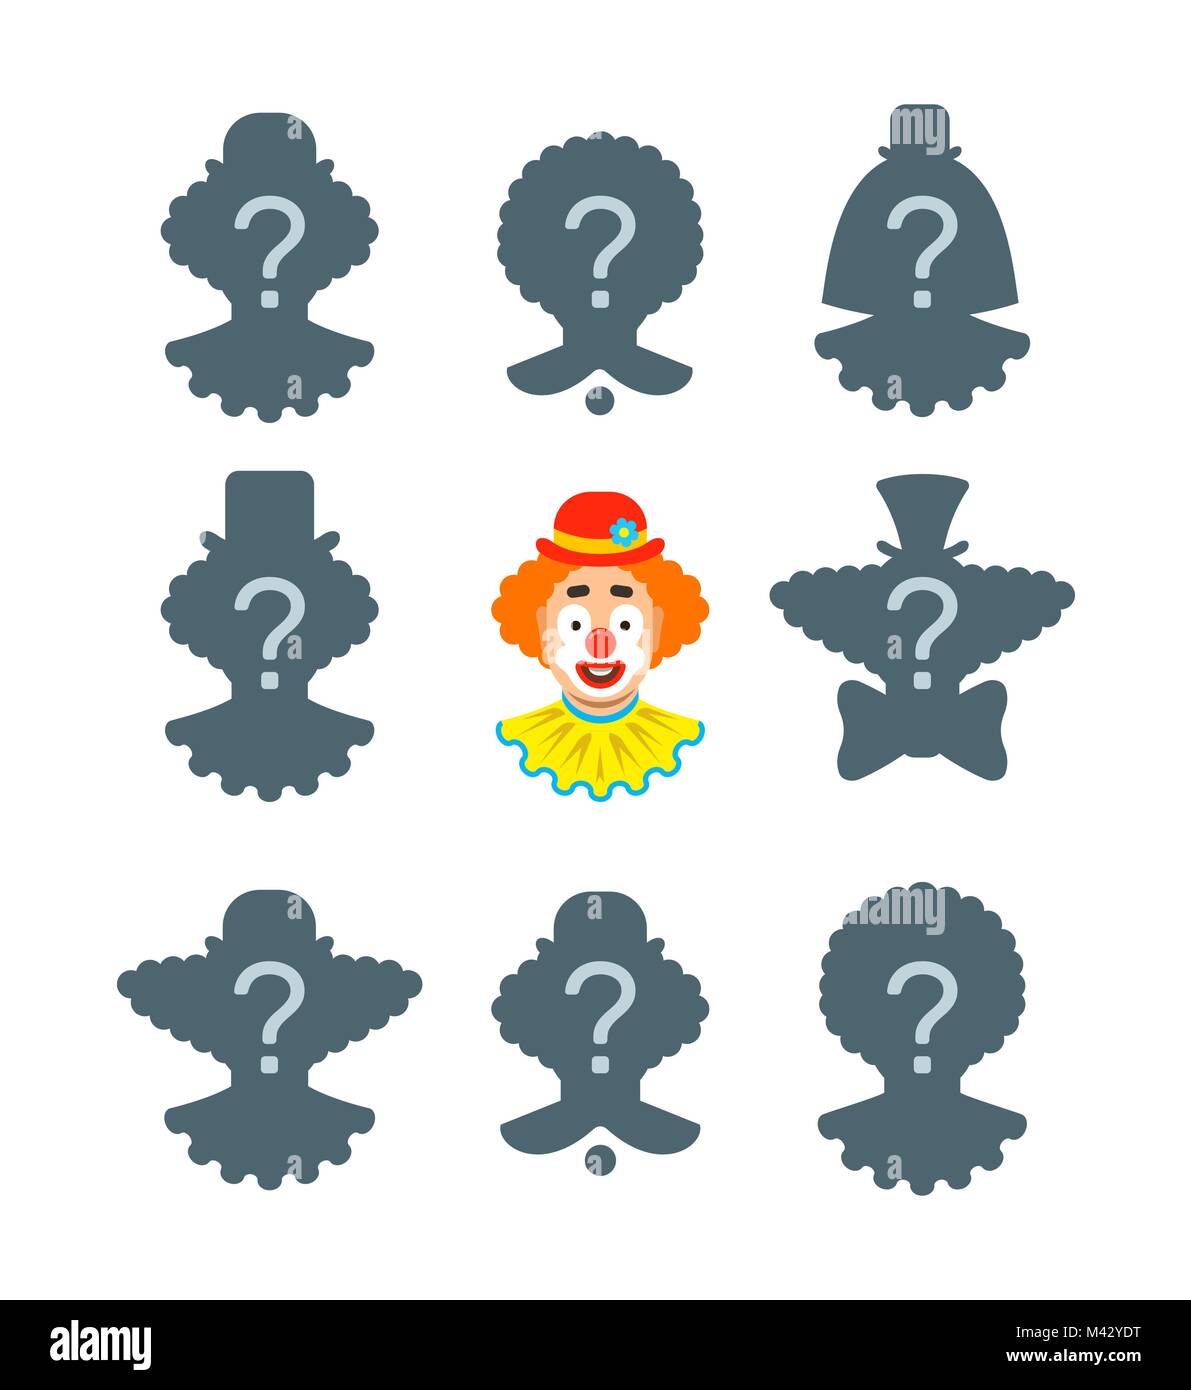 Hier finden Sie die Schatten pädagogische puzzle Spiel. Ordnen Sie die richtigen Silhouette der lustige Clown Gesicht. Visual Test für Kinder im Vorschulalter Stock Vektor